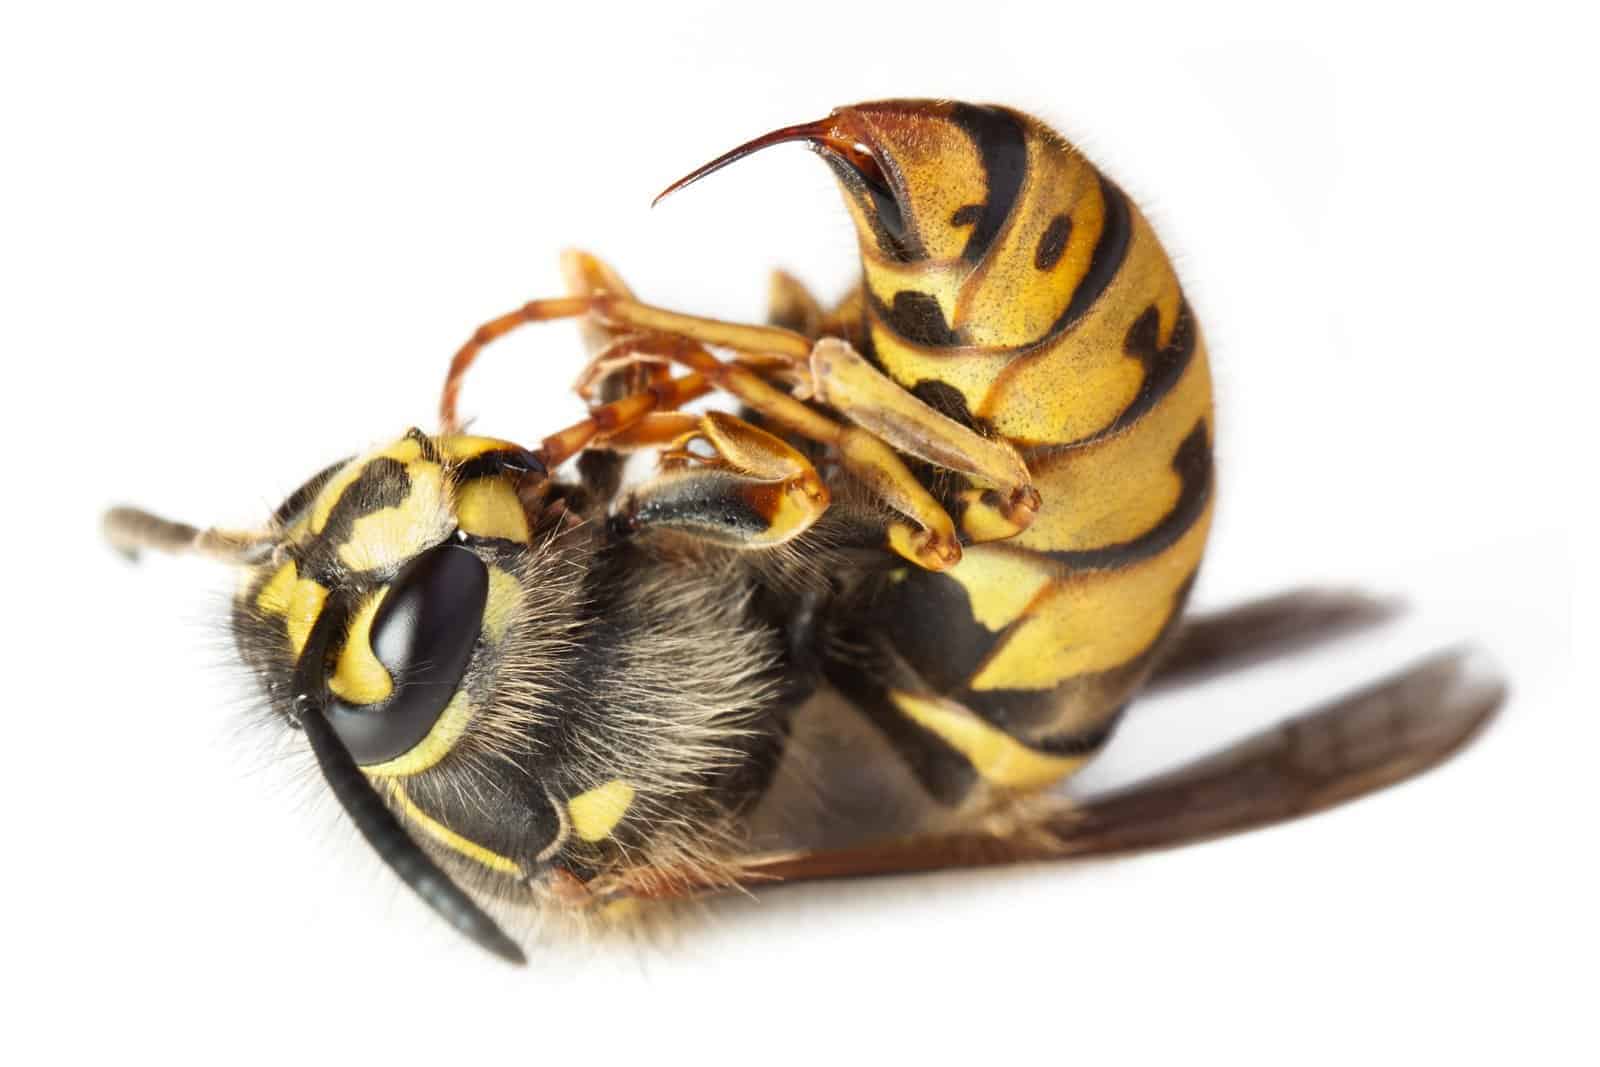 Do queen bee stings hurt more?